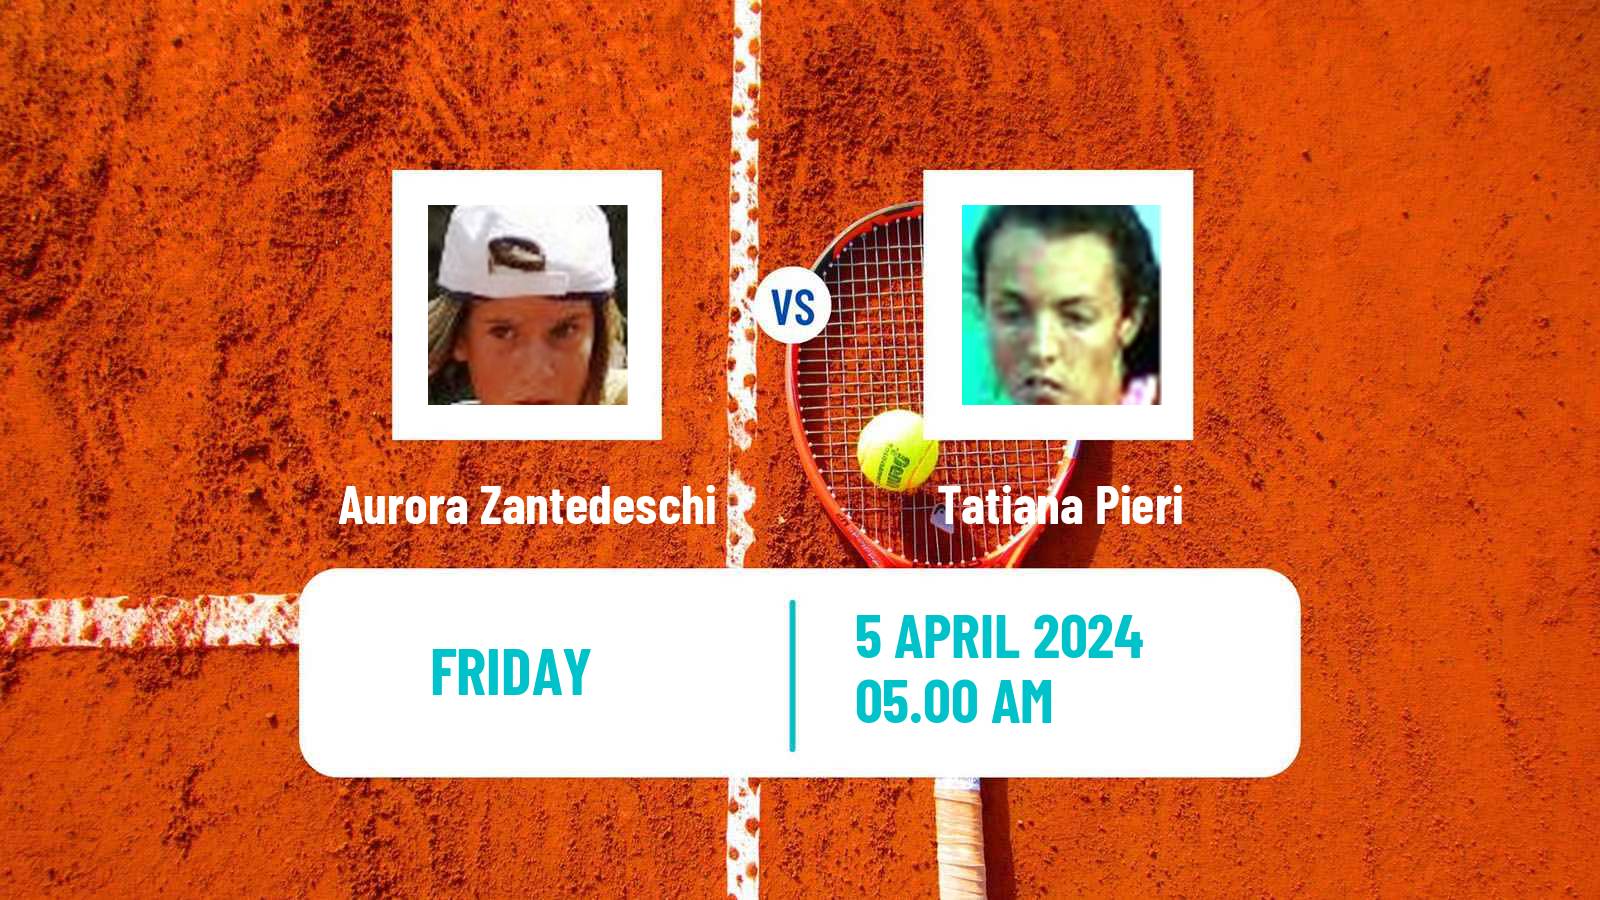 Tennis ITF W35 Santa Margherita Di Pula 2 Women Aurora Zantedeschi - Tatiana Pieri